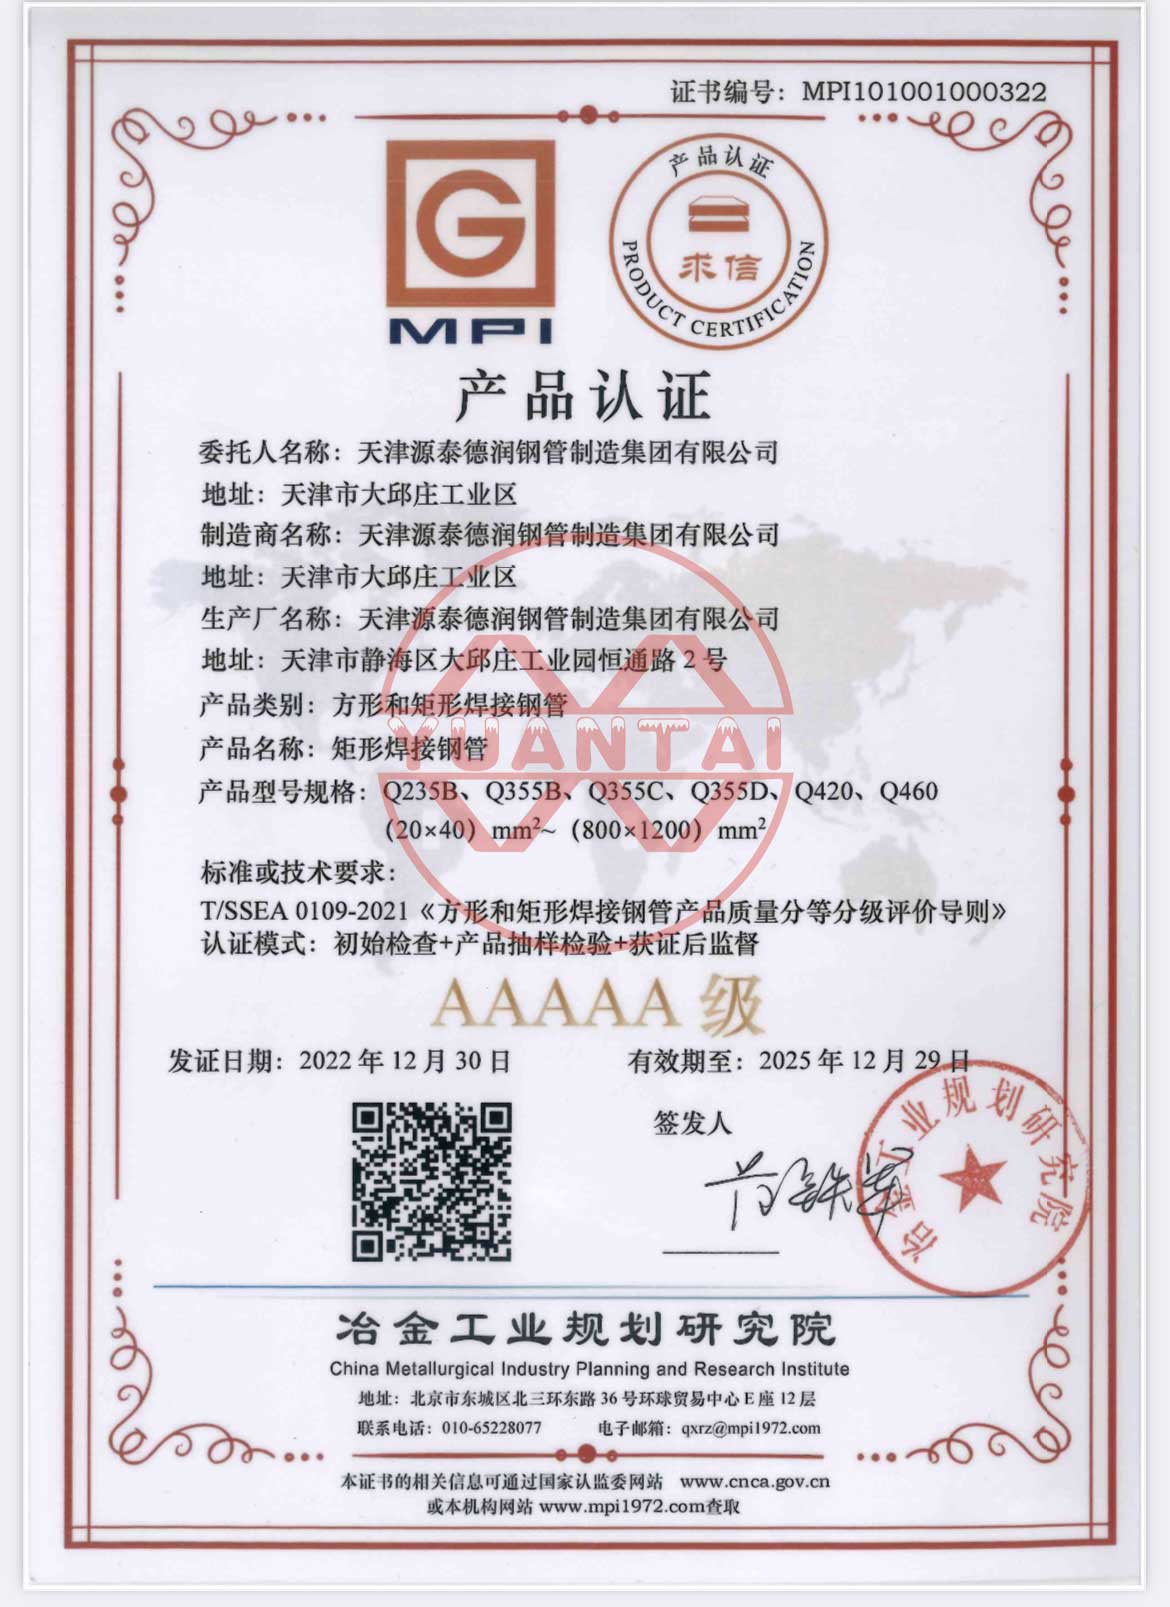 Kwadratowe i prostokątne spawane rury stalowe Grupy Tianjin Yuantai Derun otrzymały certyfikat produktu AAAAA wydany przez Instytut Planowania Przemysłu Metalurgicznego